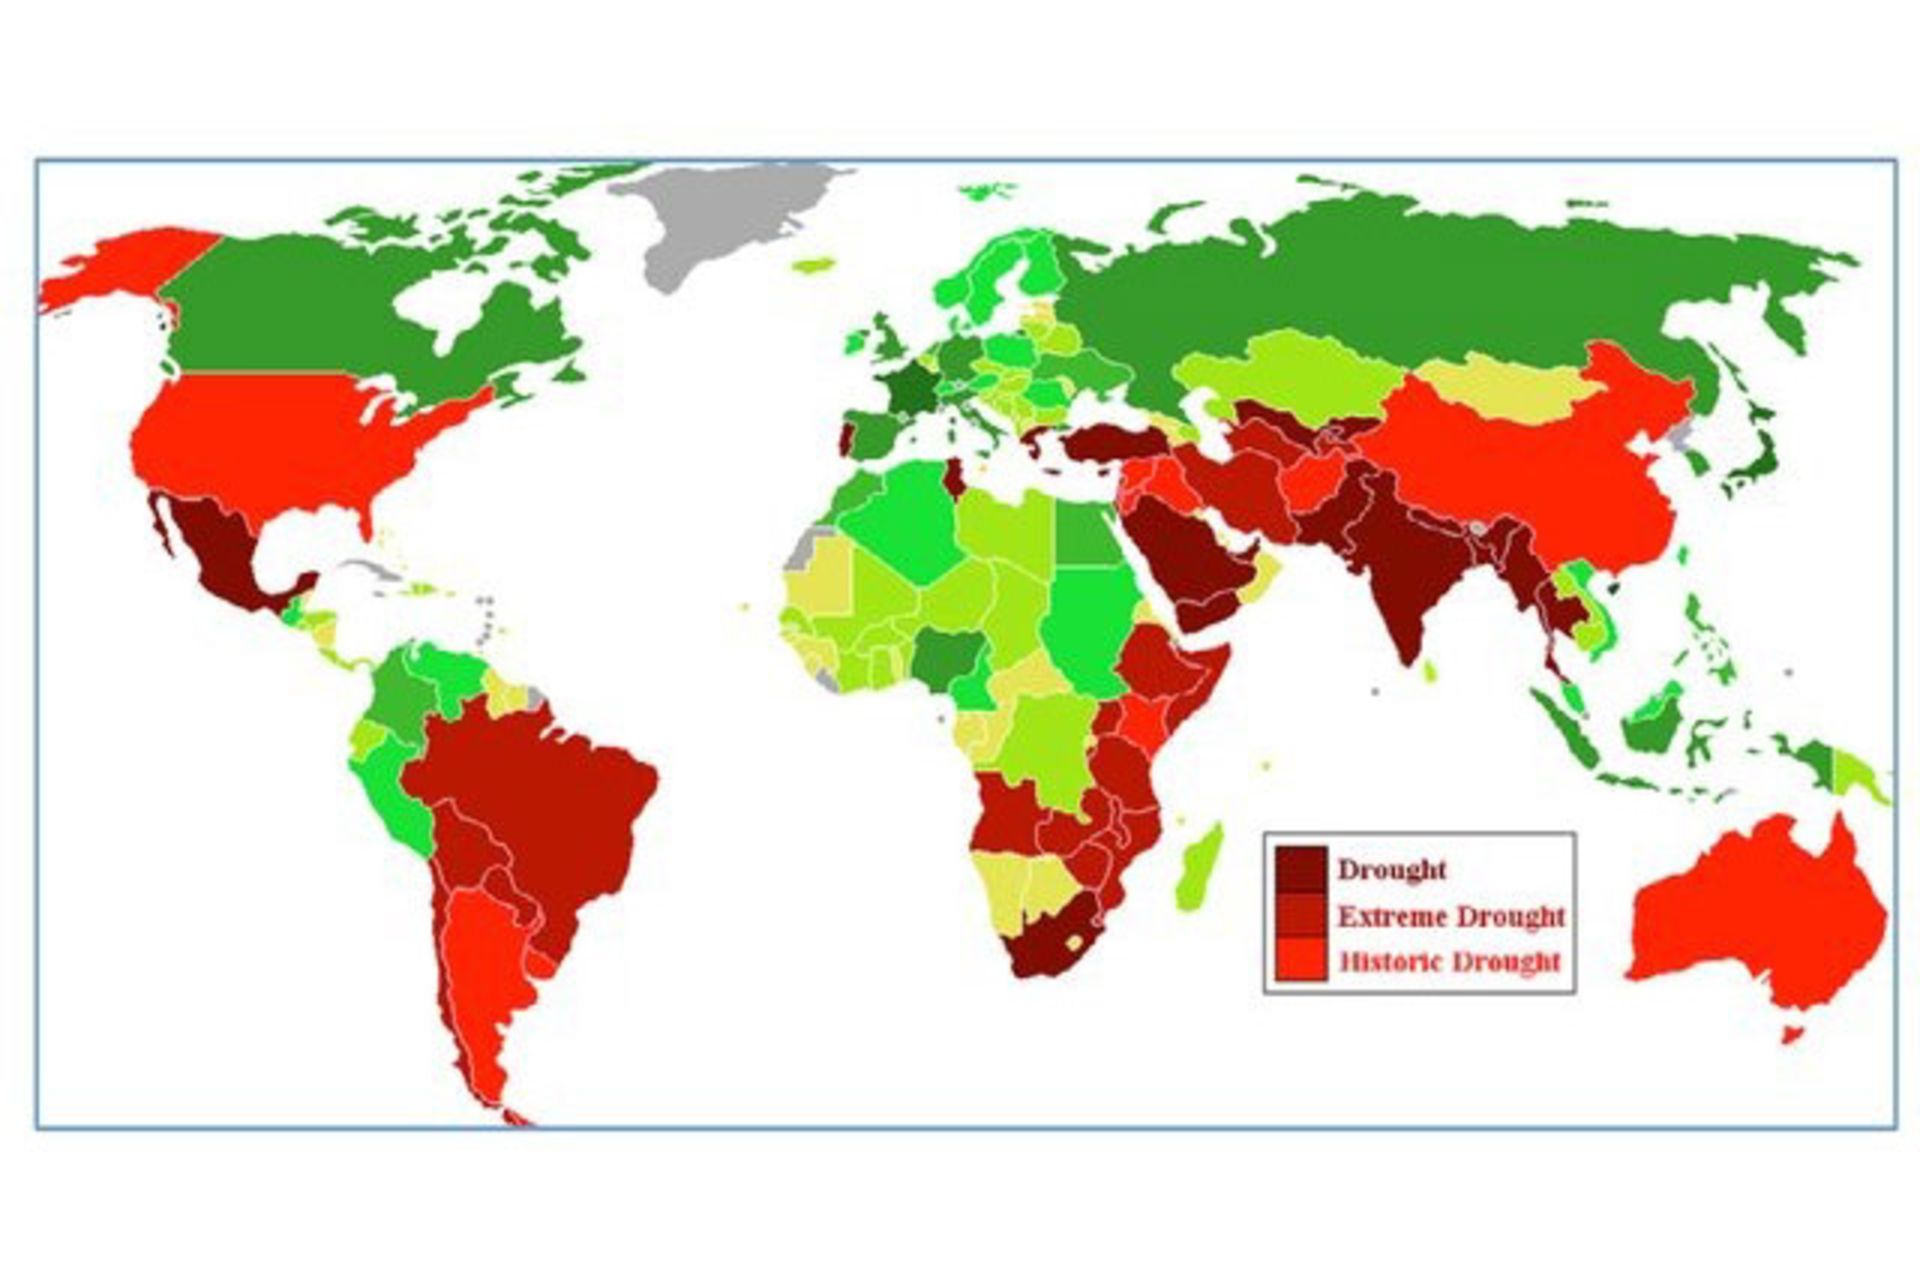 نقشه جهانی خشکسالی در مناطق مختلف در جهان